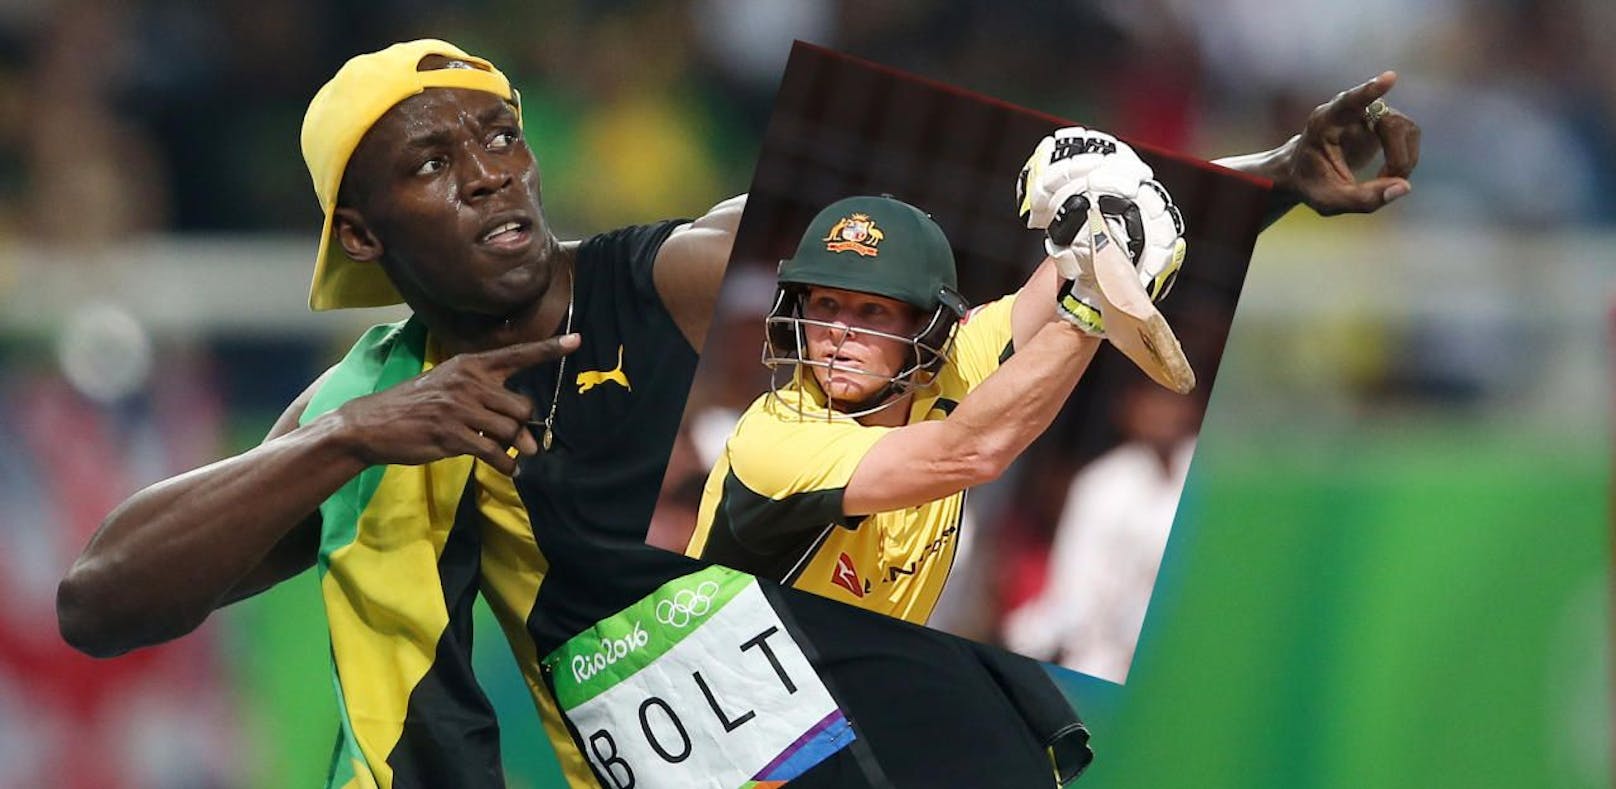 Sprint-Ikone Usain Bolt coacht ein Cricket-Team